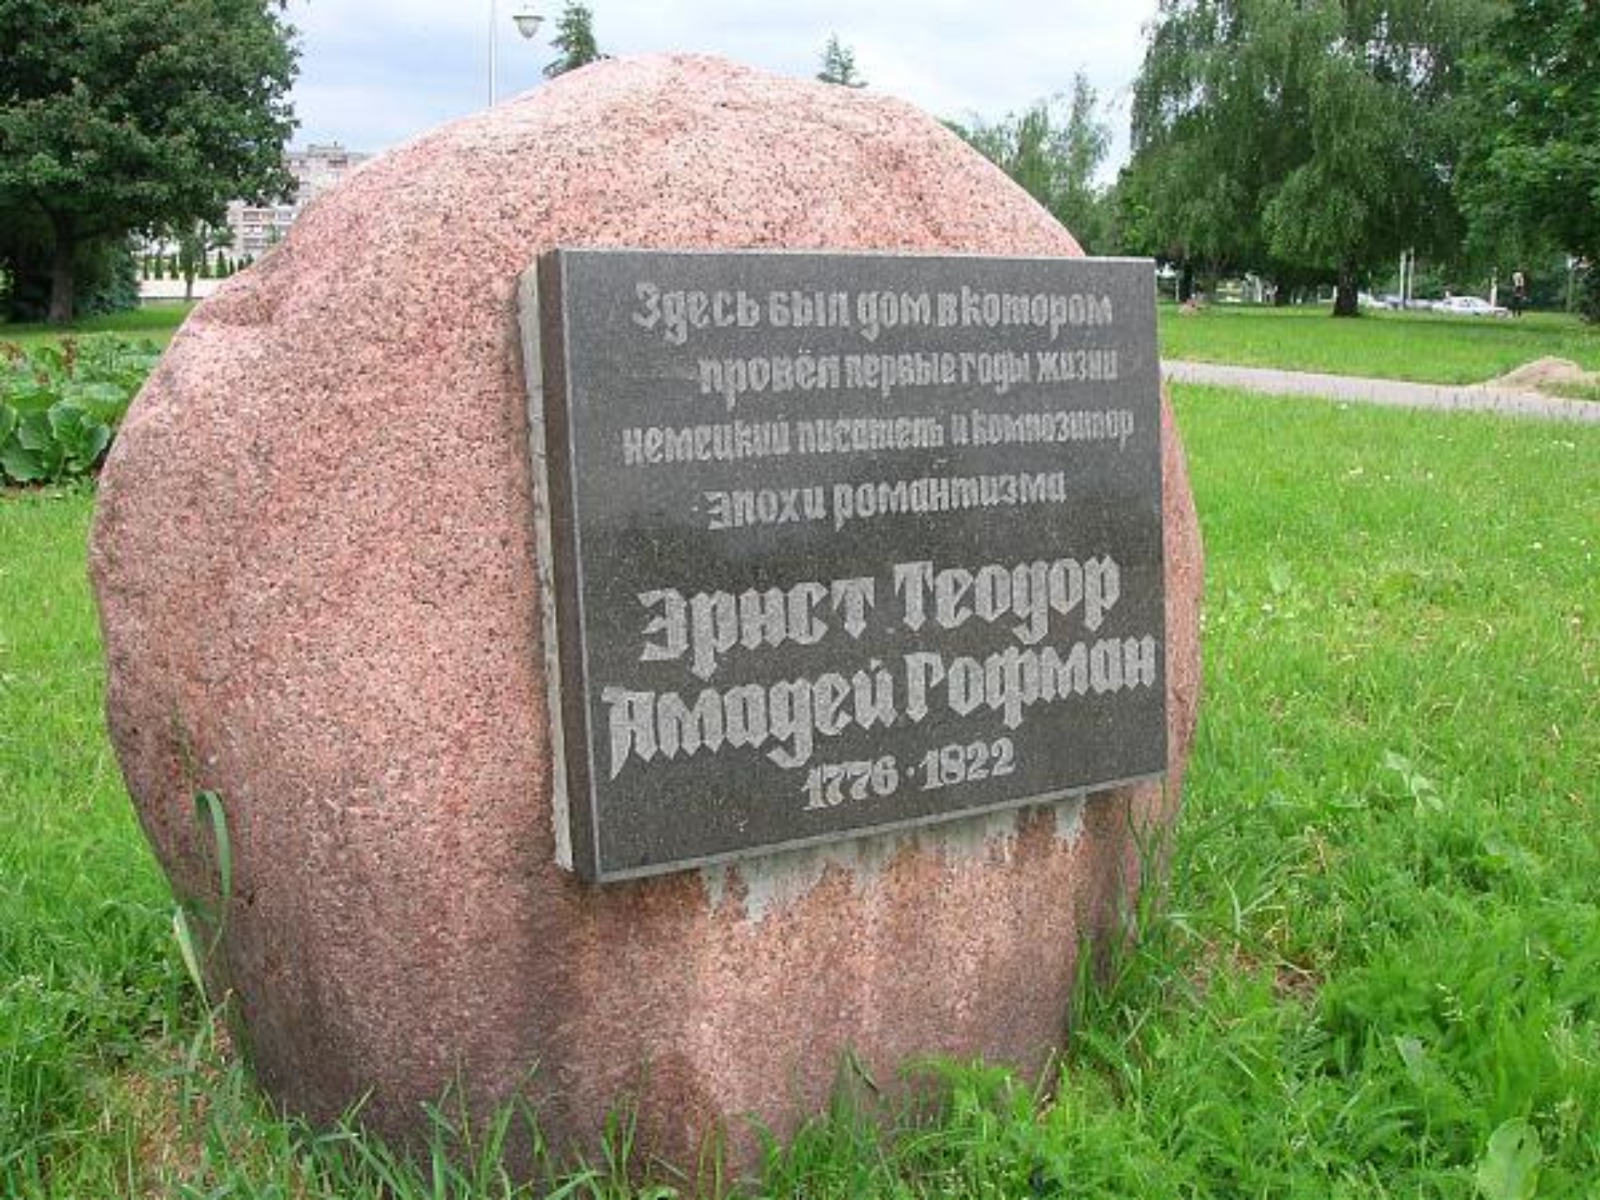 На месте дома Гофмана в Калининграде установлен мемориальный камень guidego.ru